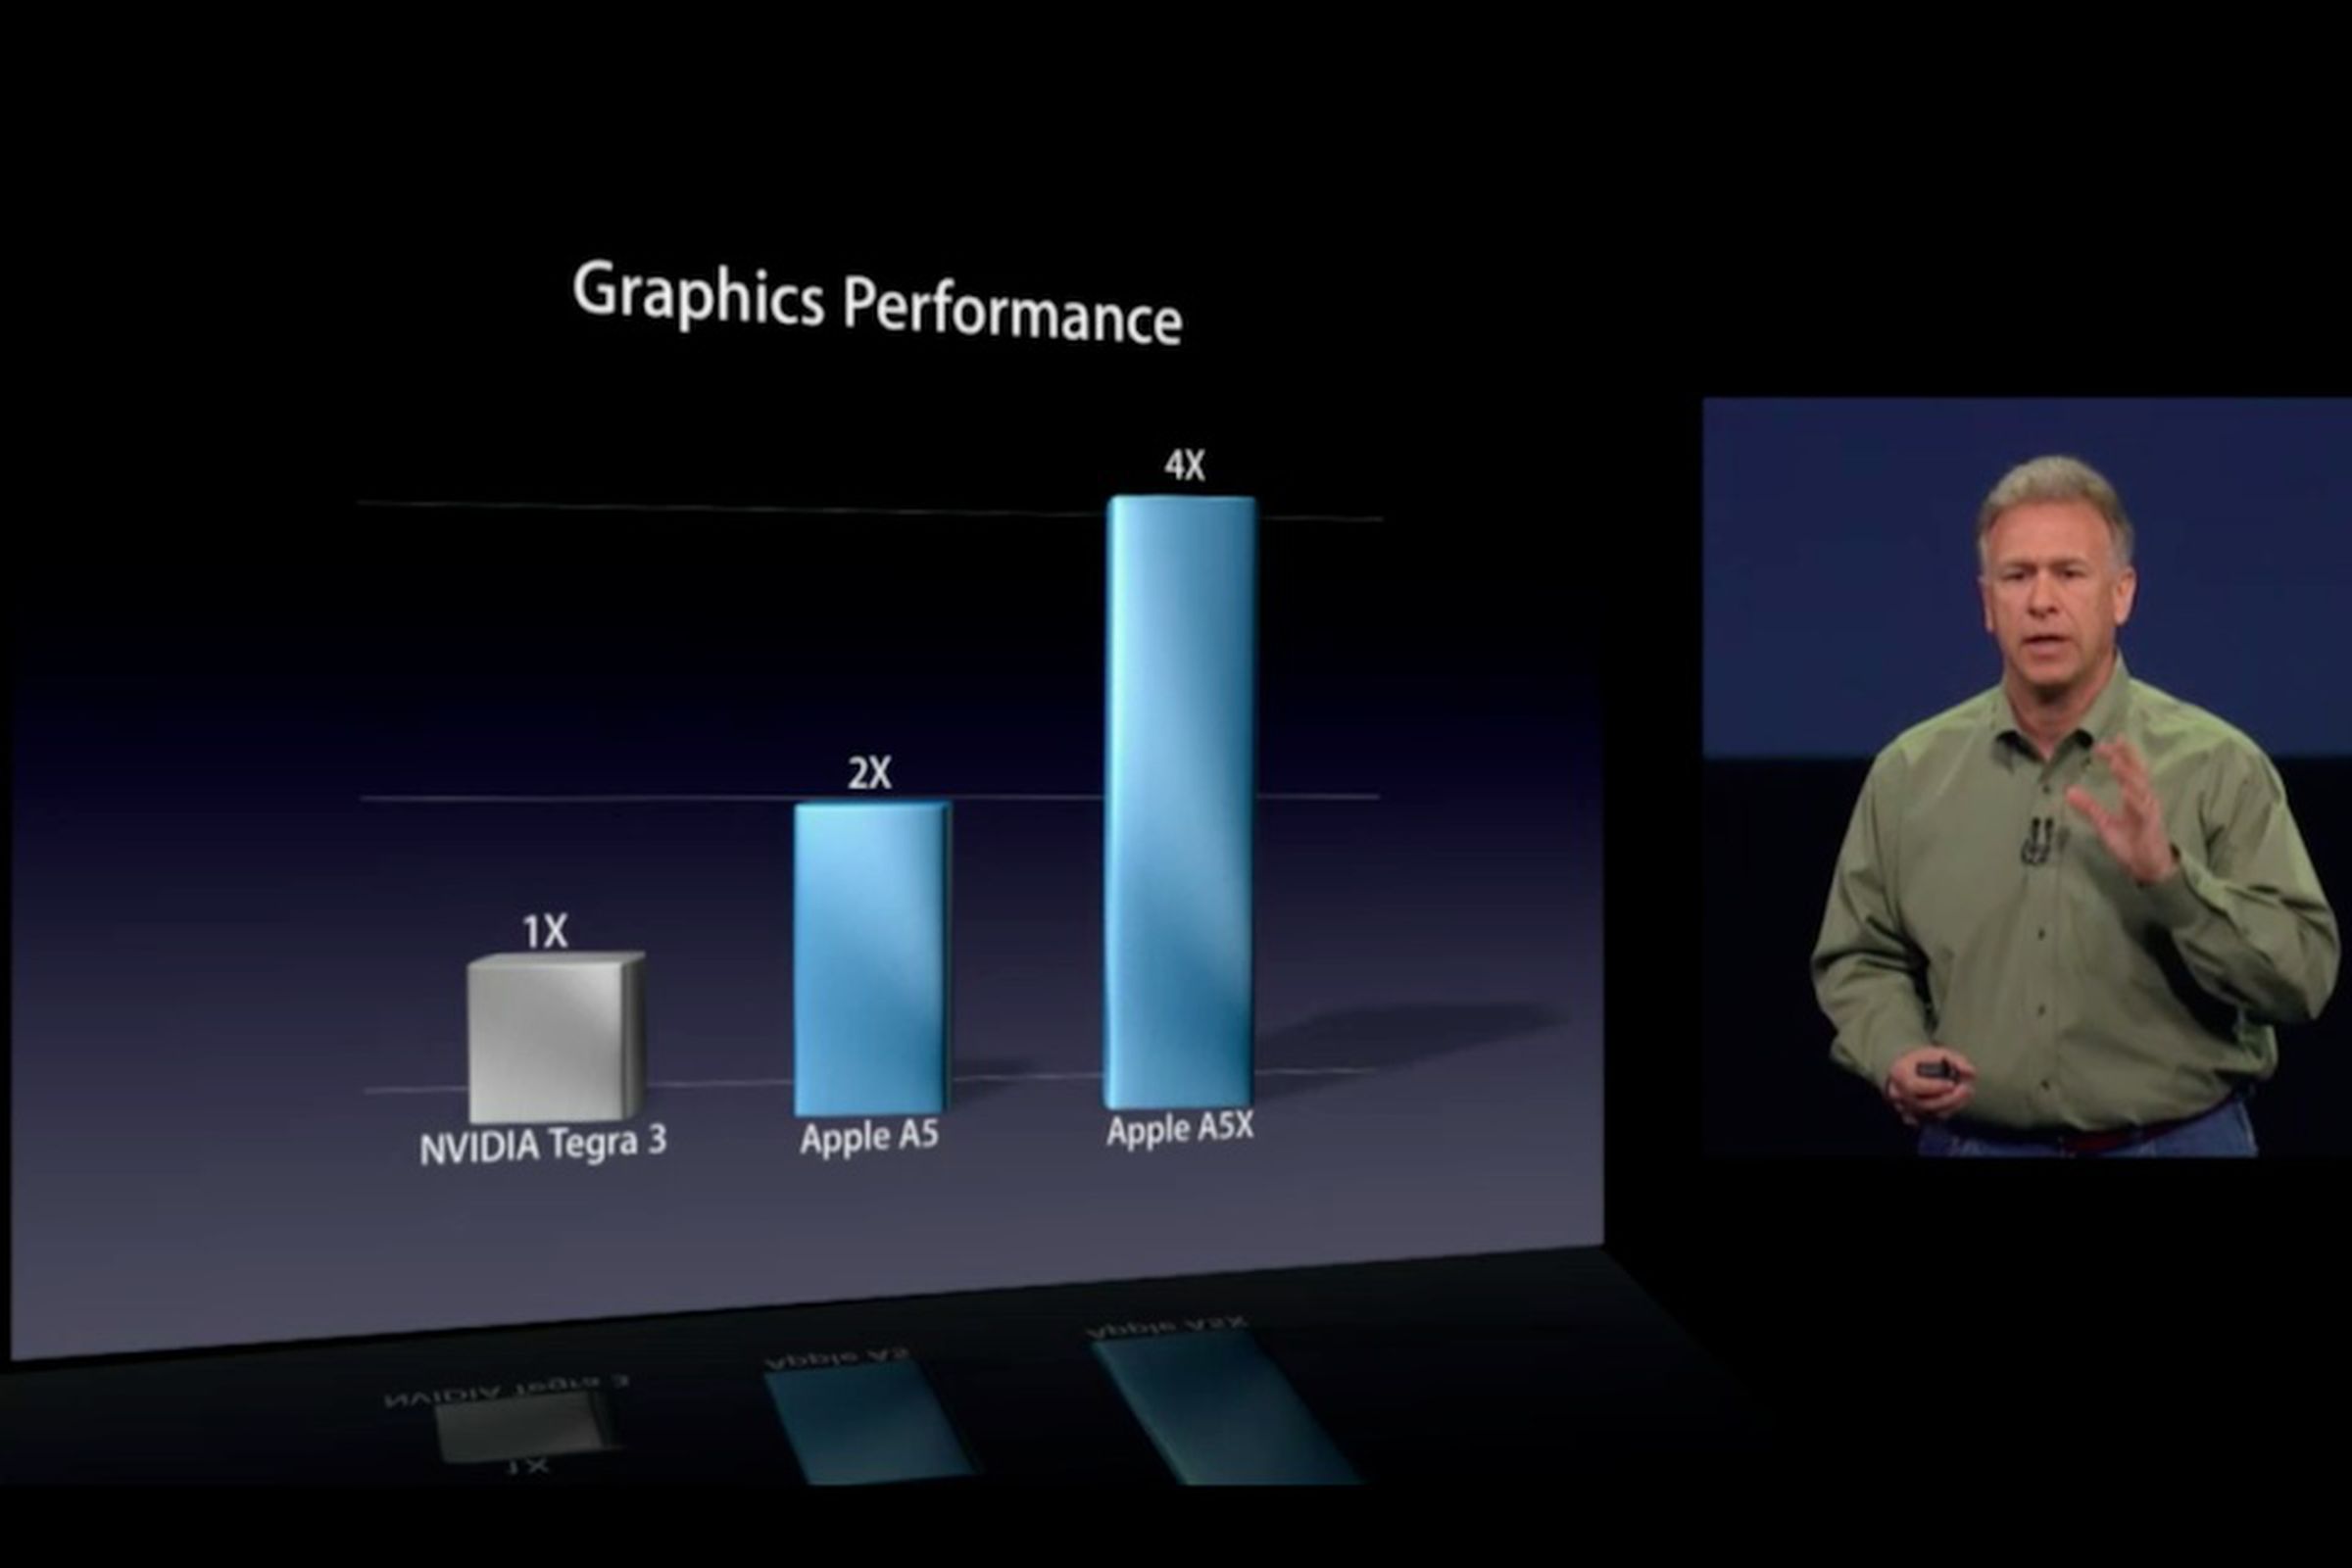 Apple A5X 4x Tegra 3 comparison